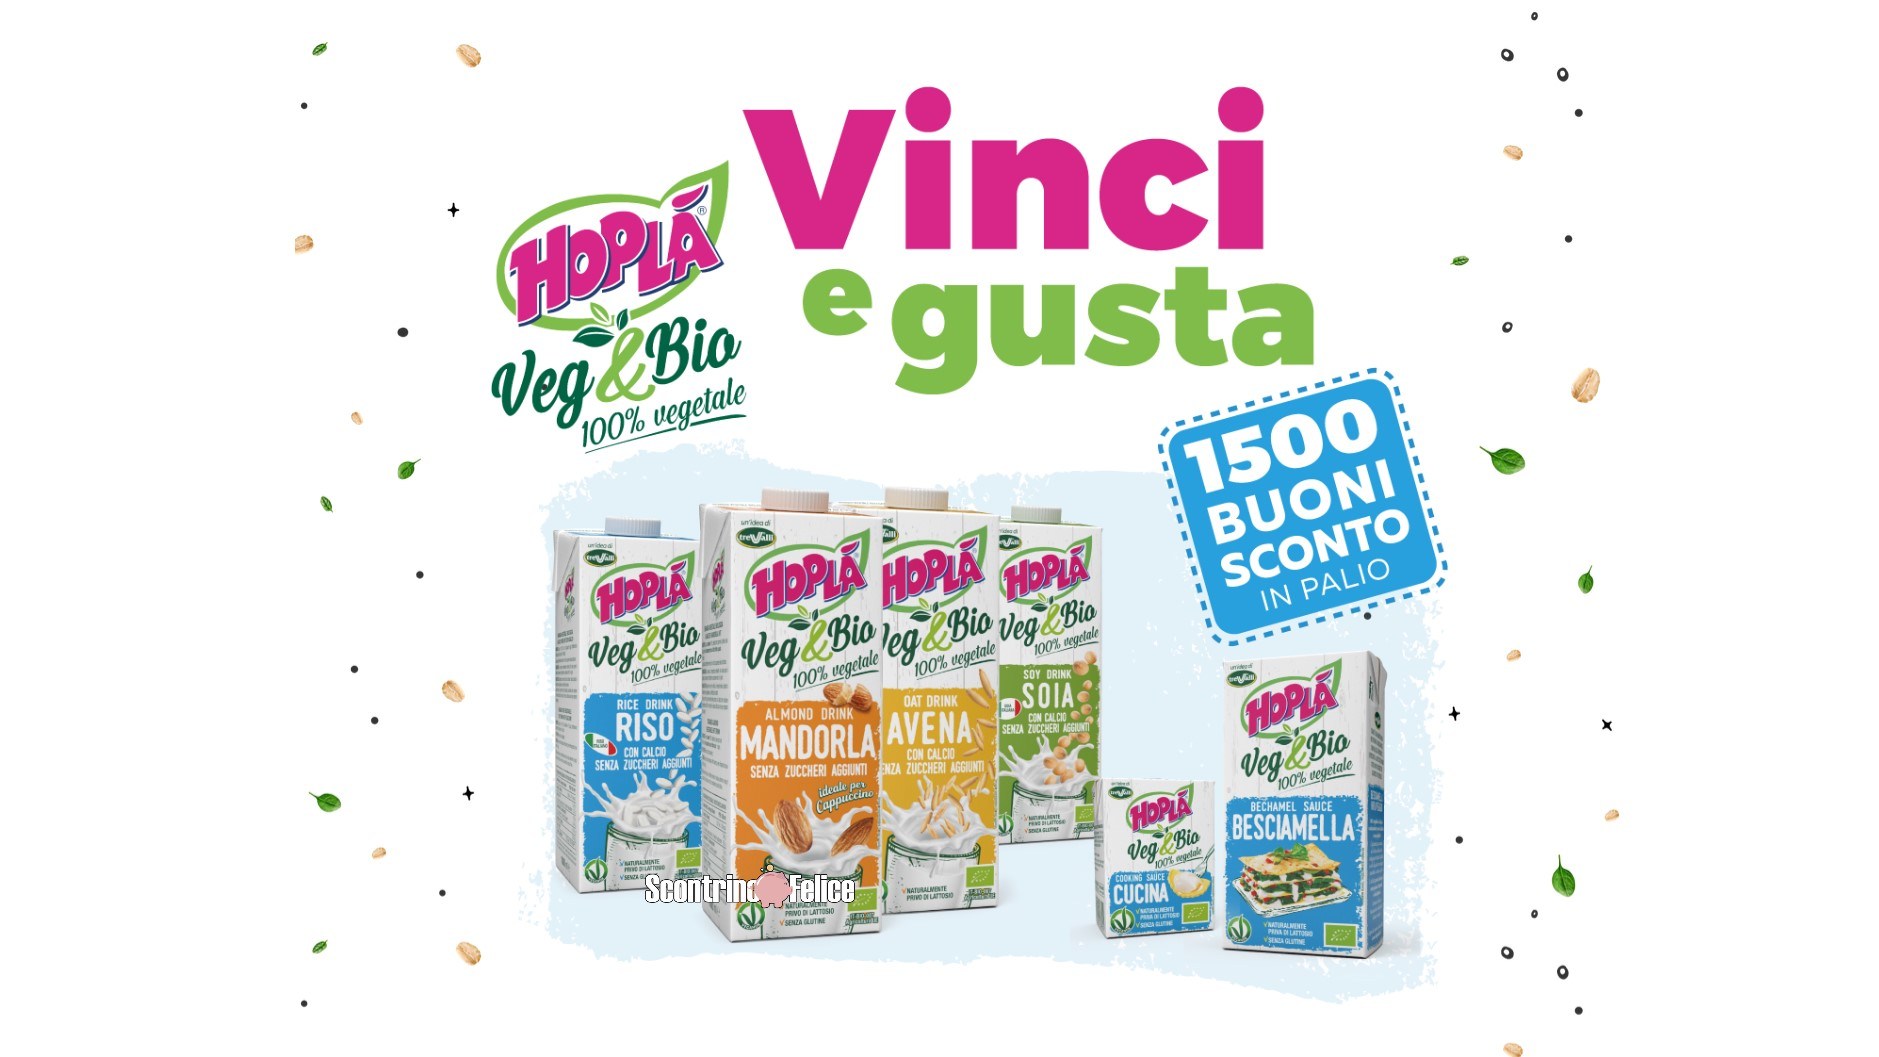 Concorso Vinci&Gusta con Hopla Veg&Bio 1500 Buoni Sconto in Palio